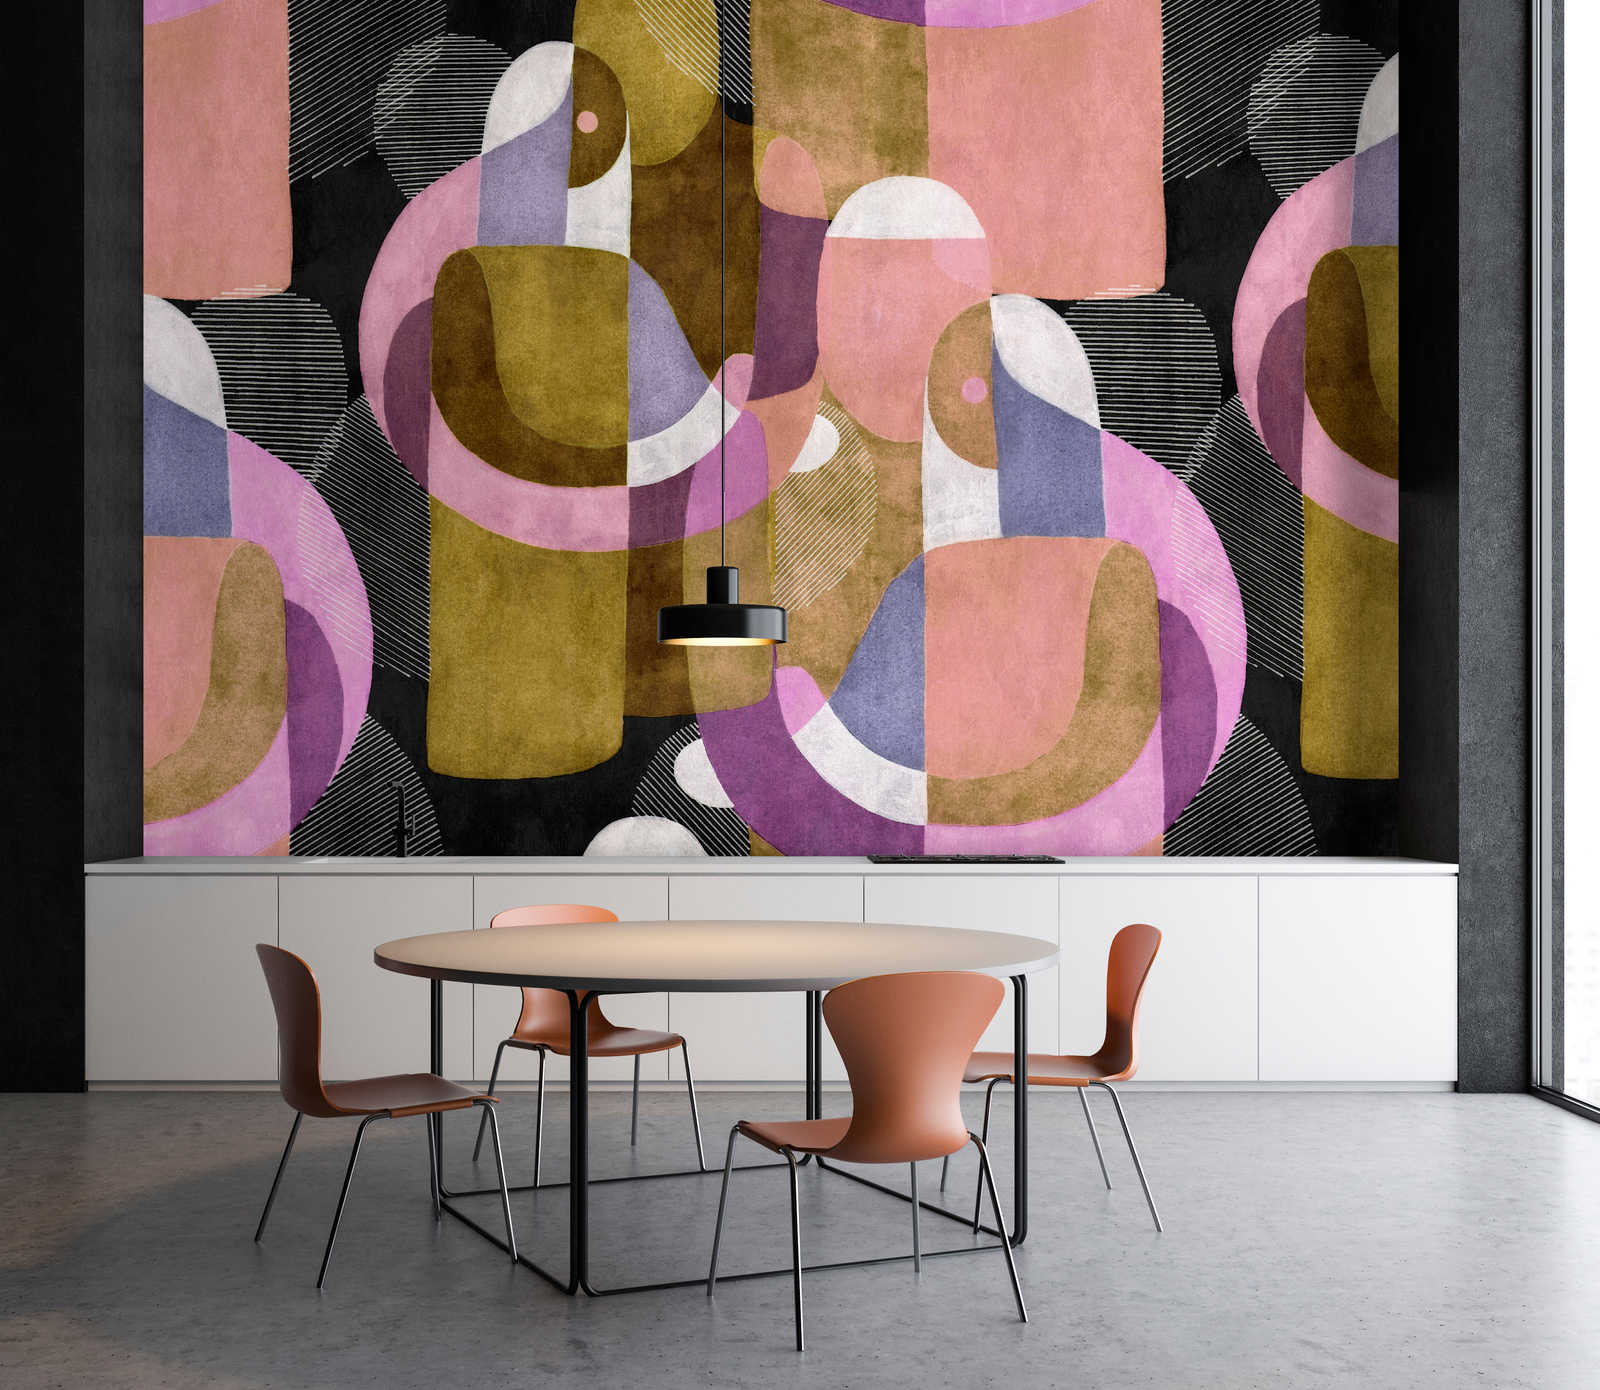             Meeting Place 3 - Papier peint Ethno Deisgn dans le style Colour Block coloré
        